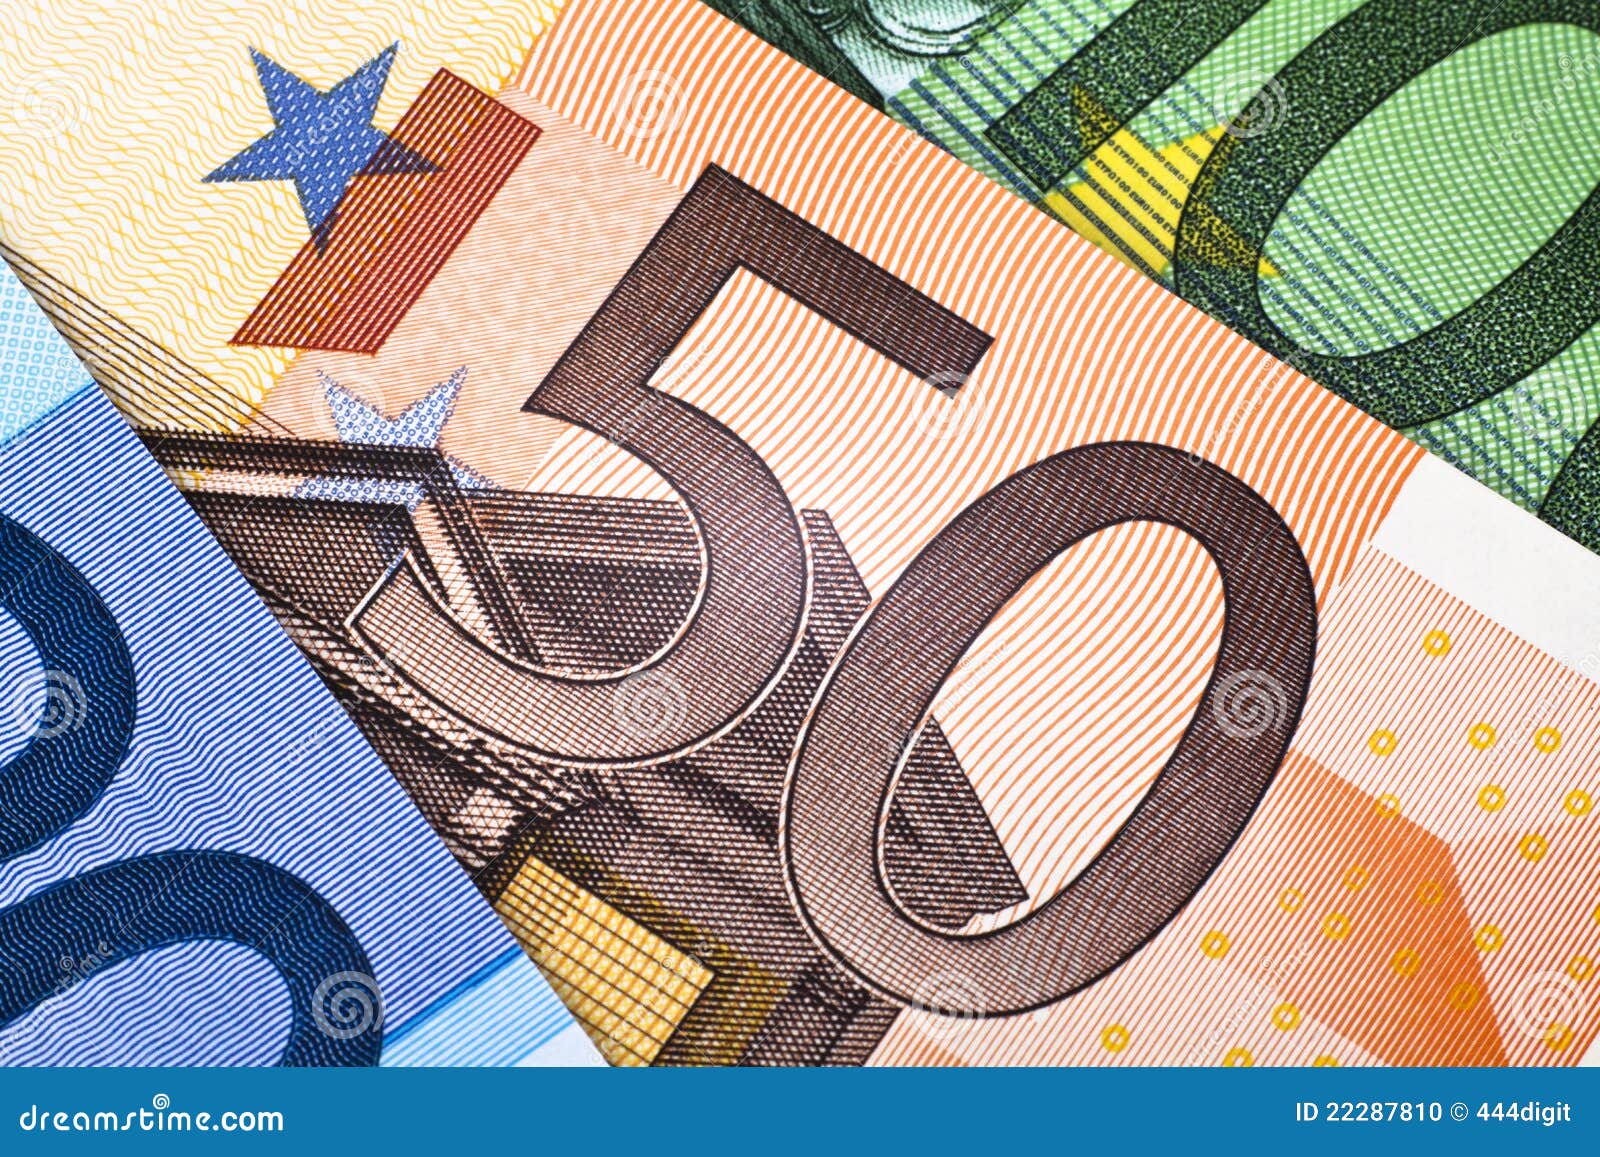 500欧元货币背景。 库存照片 - 图片: 28608563